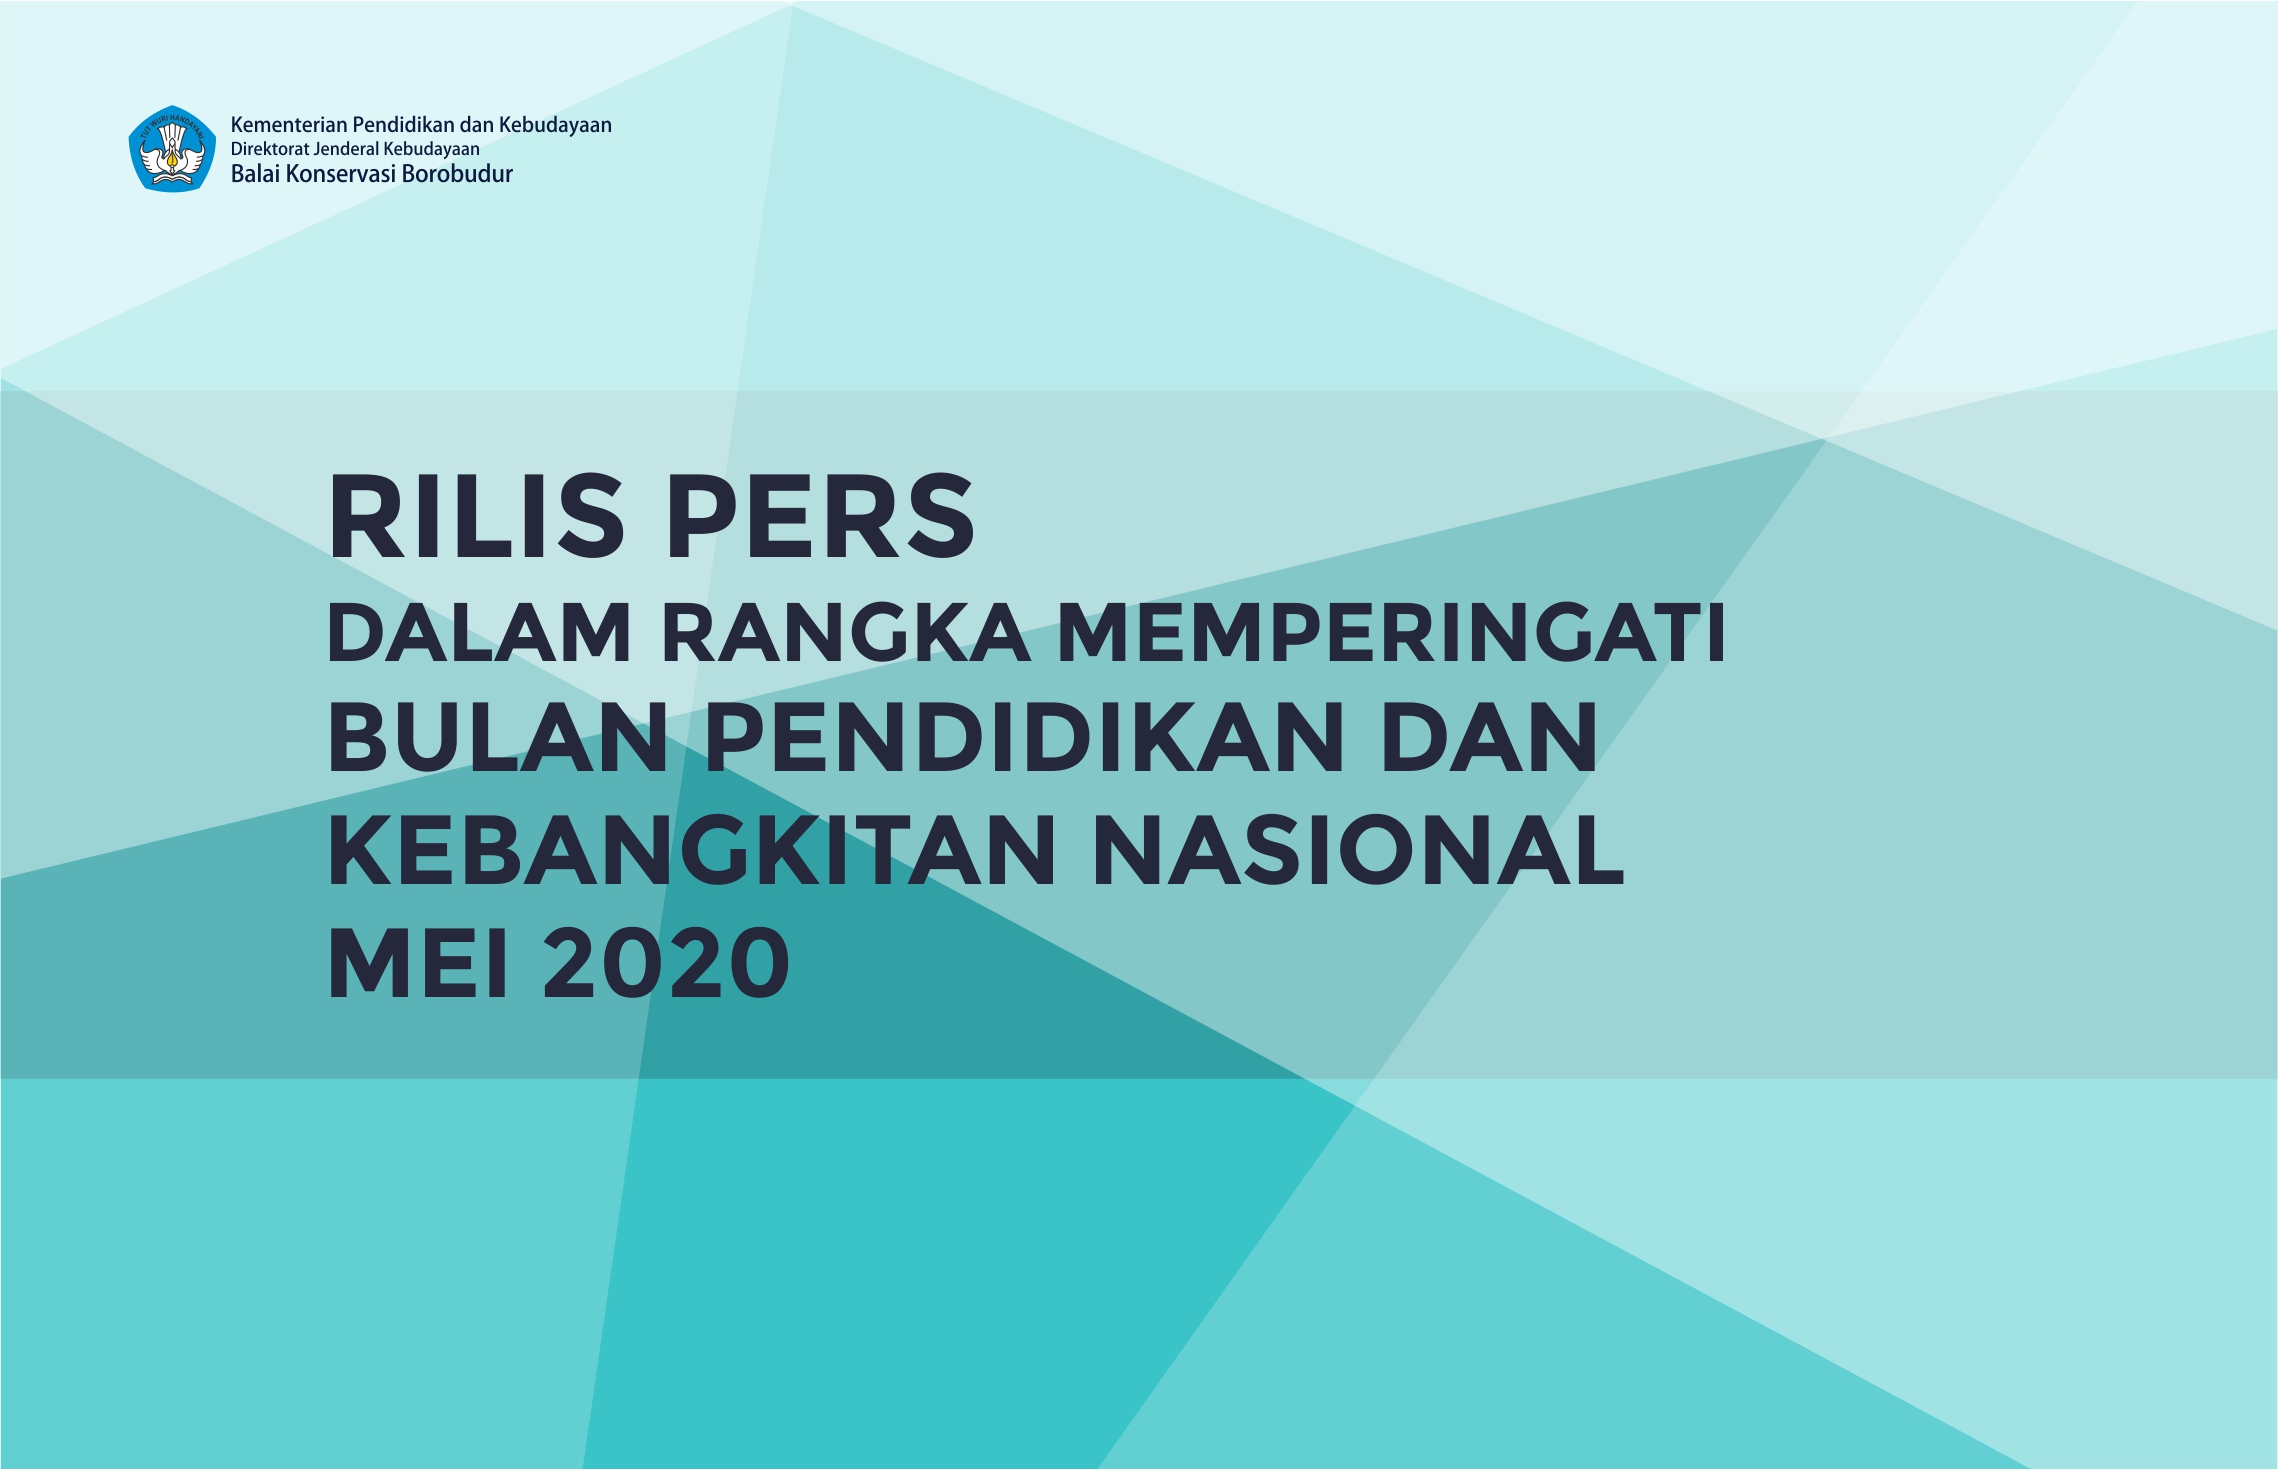 You are currently viewing Rilis Pers dalam Rangka Memperingati Bulan Pendidikan dan Kebangkitan Nasional